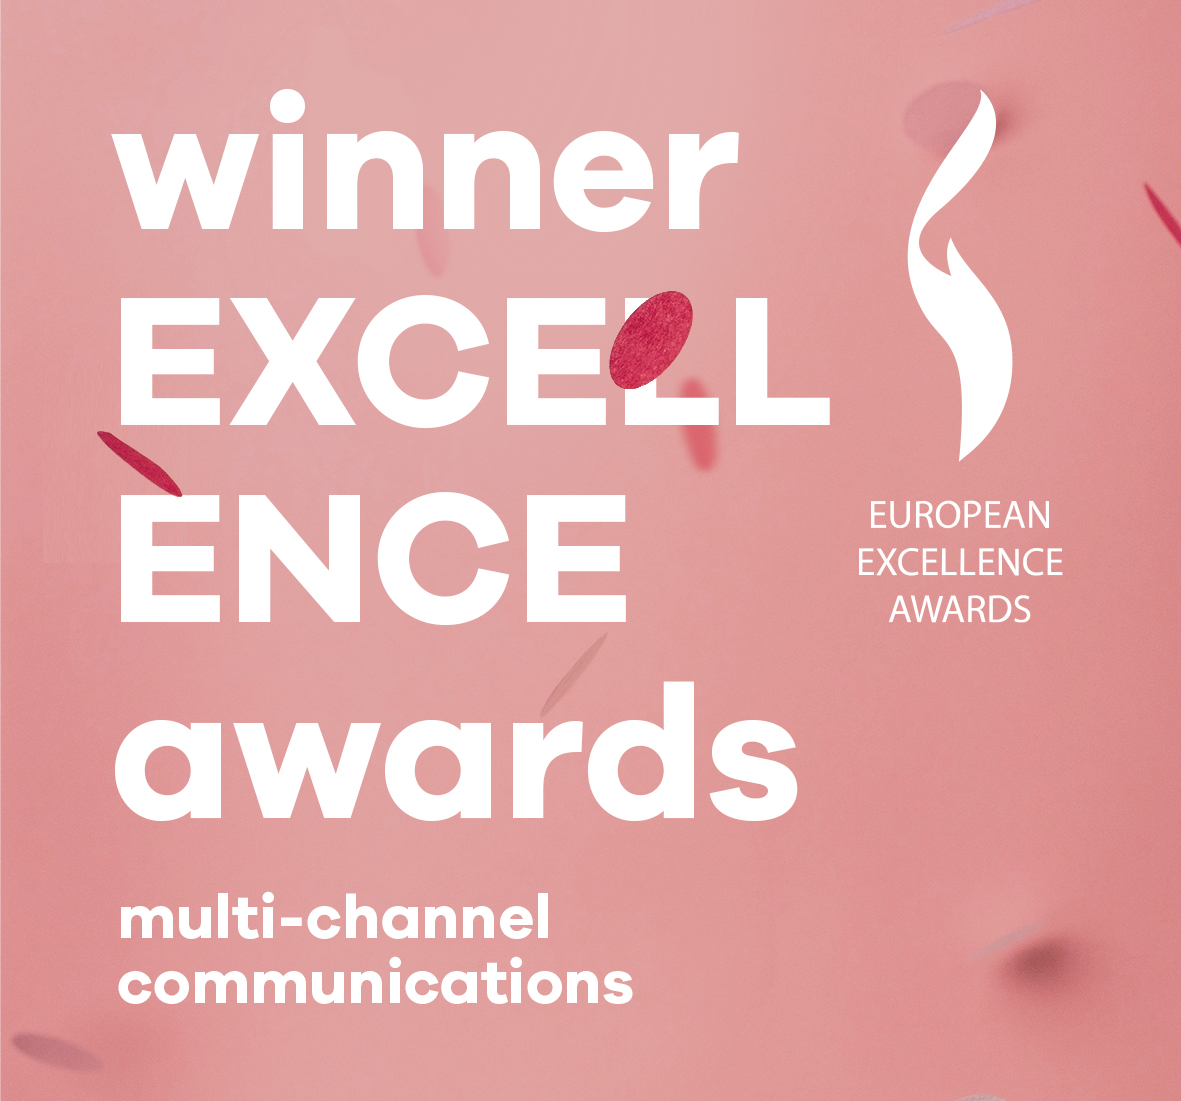 DEARDAN&Friends + BIJL PR winner European Excellence Awards 2020 for best case multi-channel communications